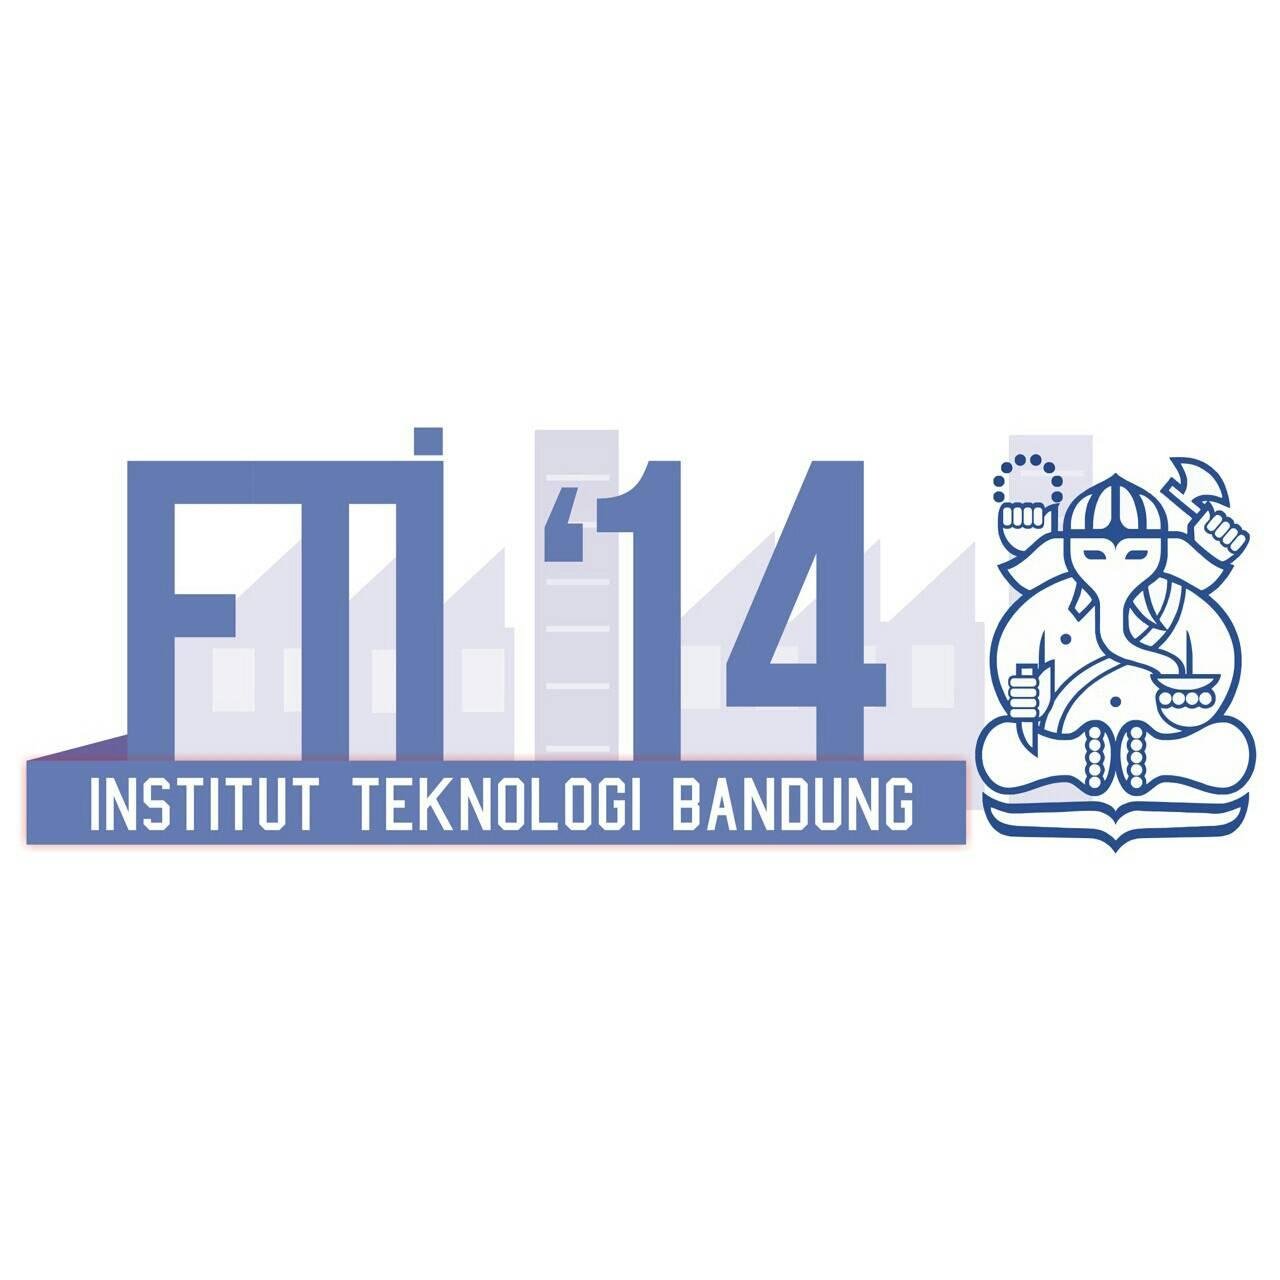 Faculty of Industrial Technology 2014. Info penting, cek fav.